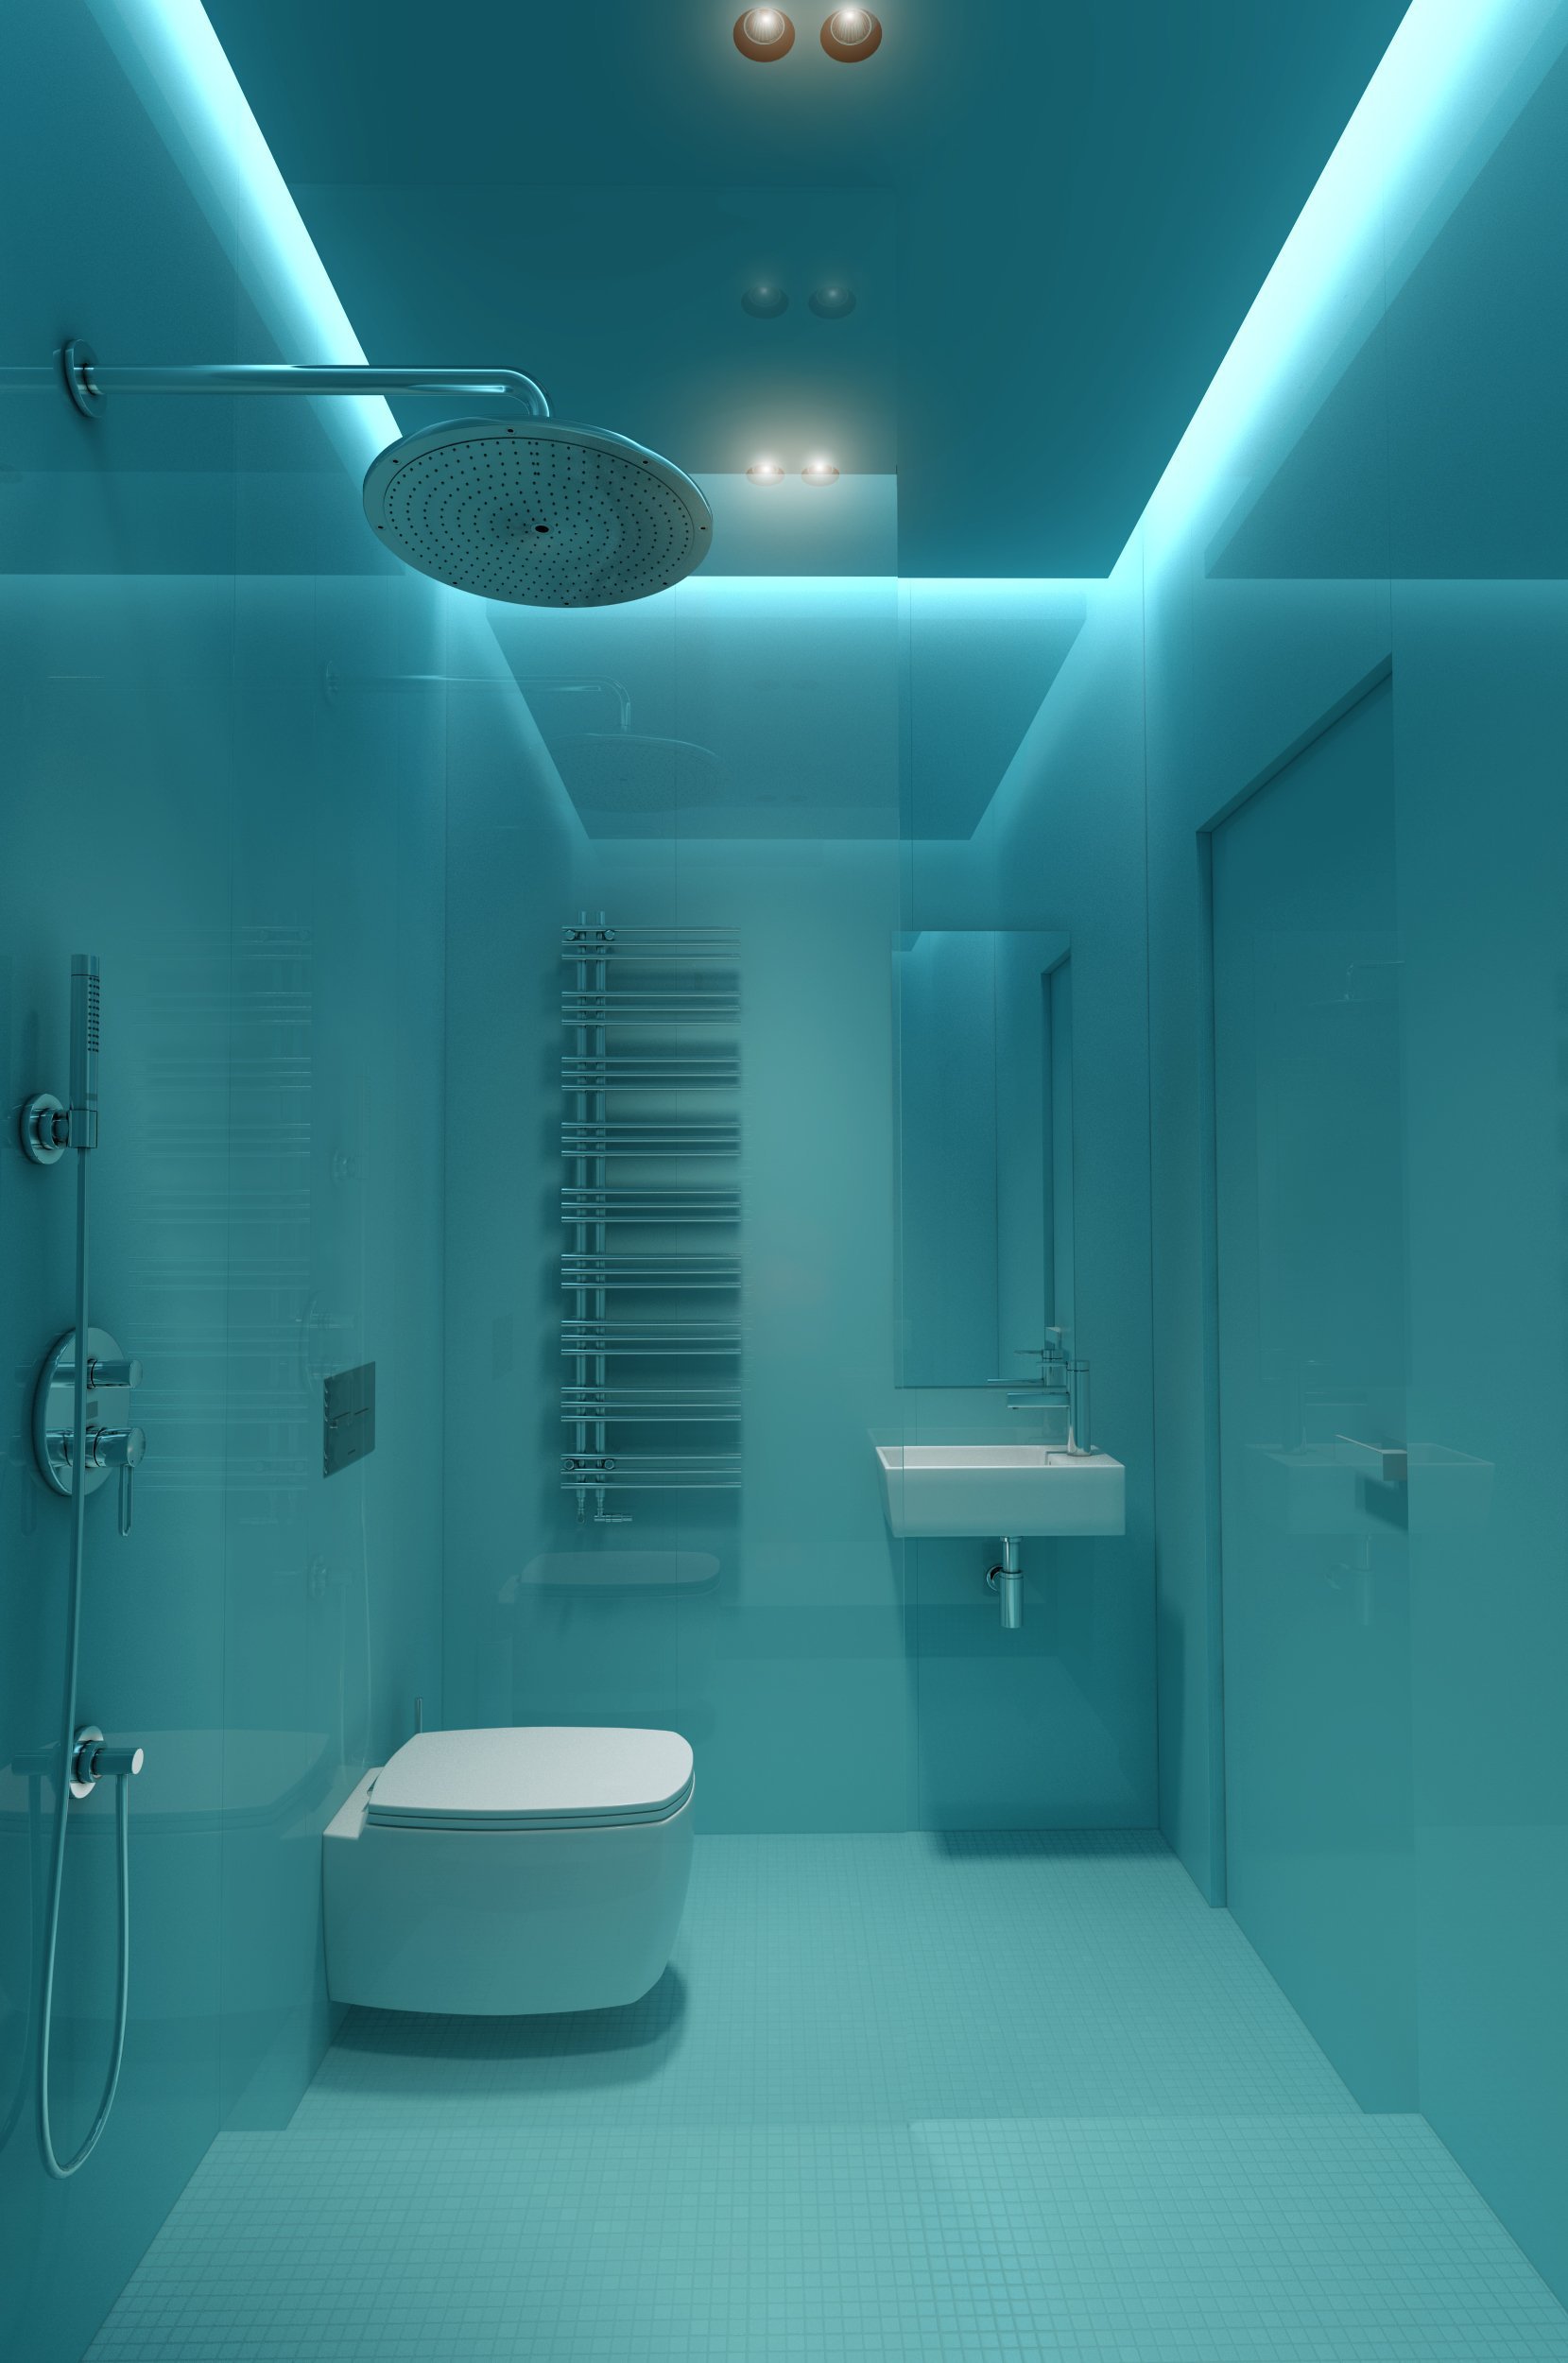 Натяжной потолок ванна туалет. Подсветка потолка в ванной. Ванная комната с подсветкой. Подвесной потолок с подсветкой в ванной. Подсветка в ванной комнате потолок.